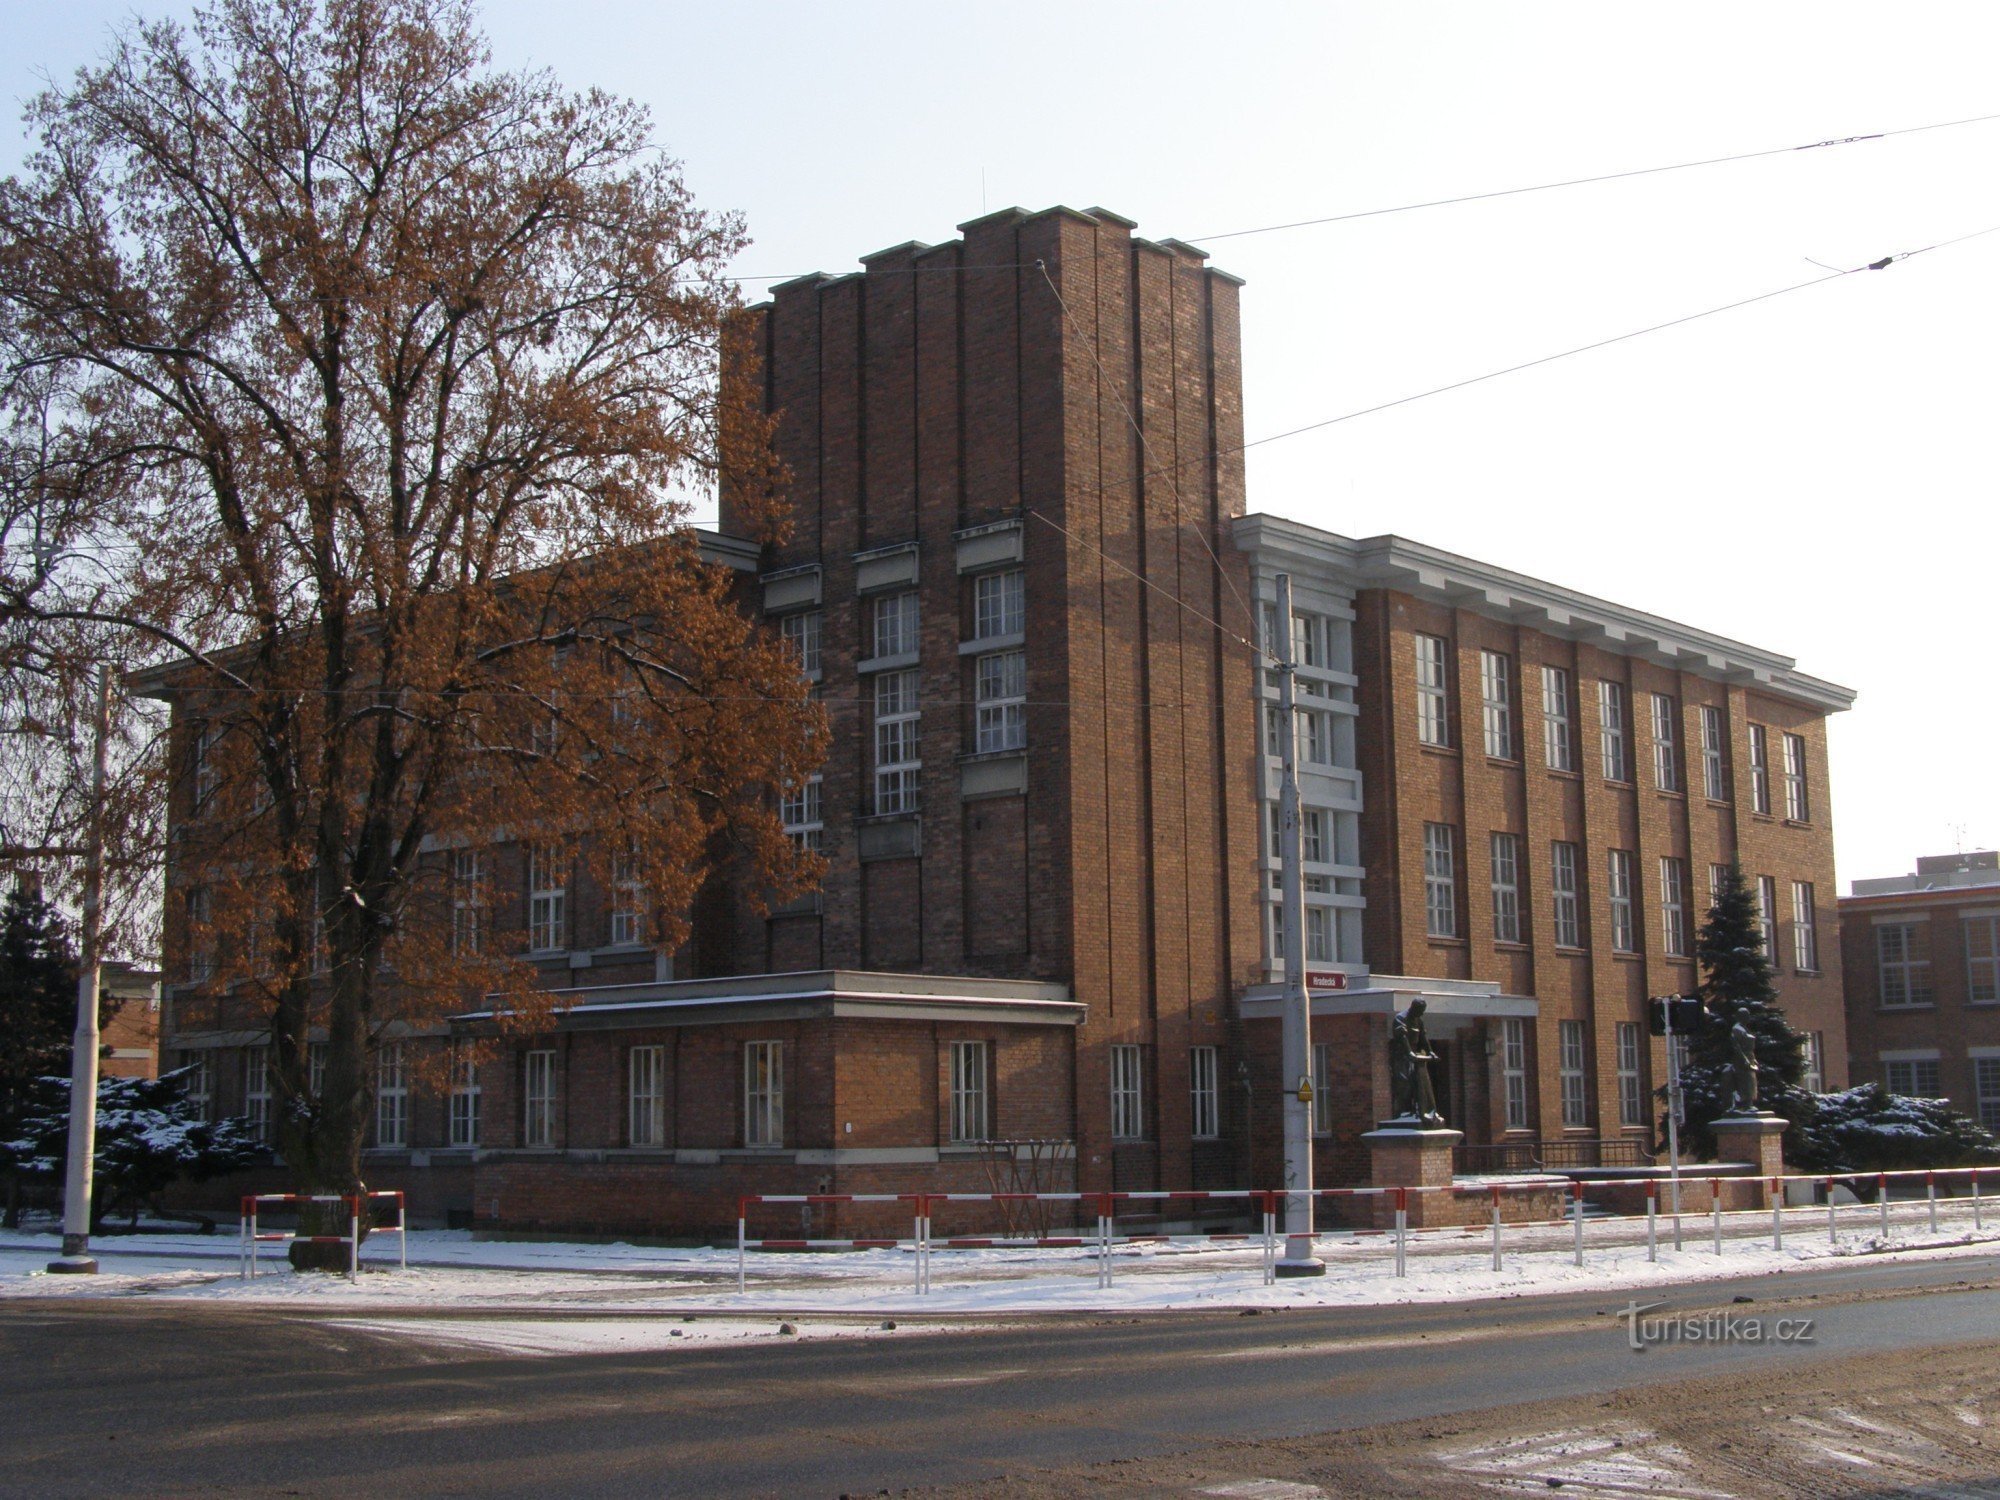 Hradec Králové - Gočár 的前 Koželuž 学校